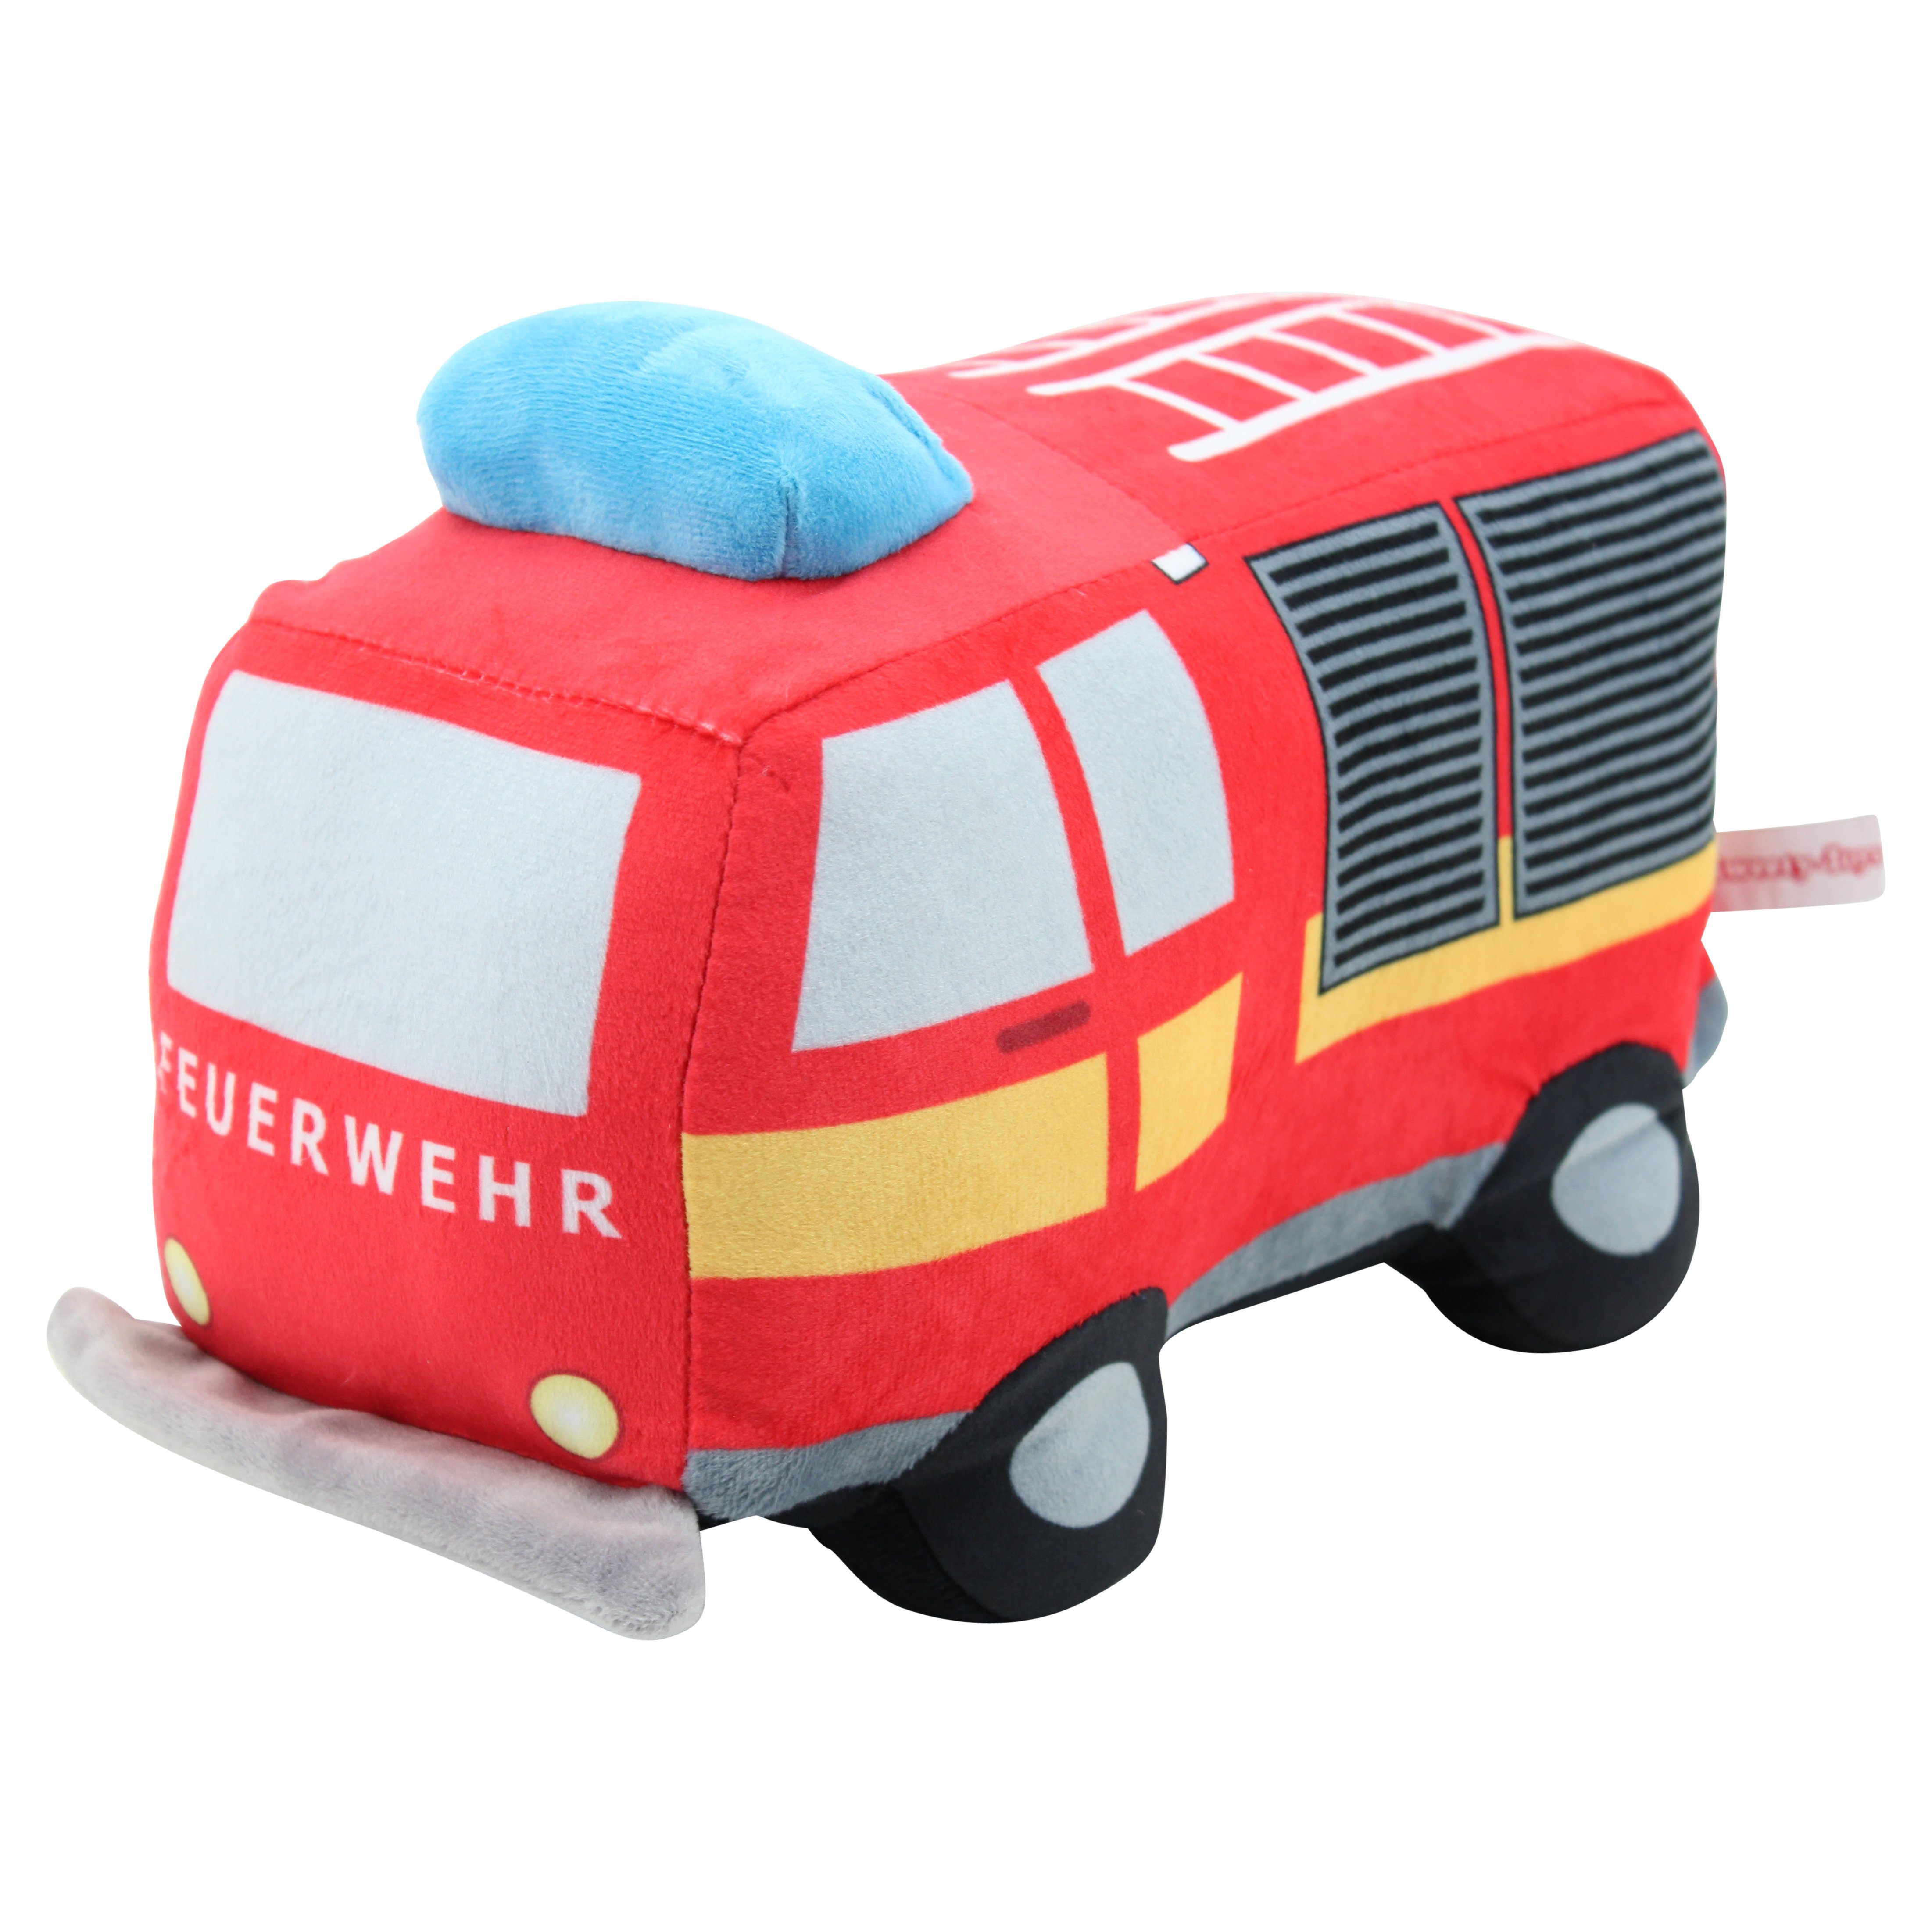 Sweety-Toys Kuscheltier Sweety Toys 12190 Feuerwehr LKW Plüsch Plüschtier